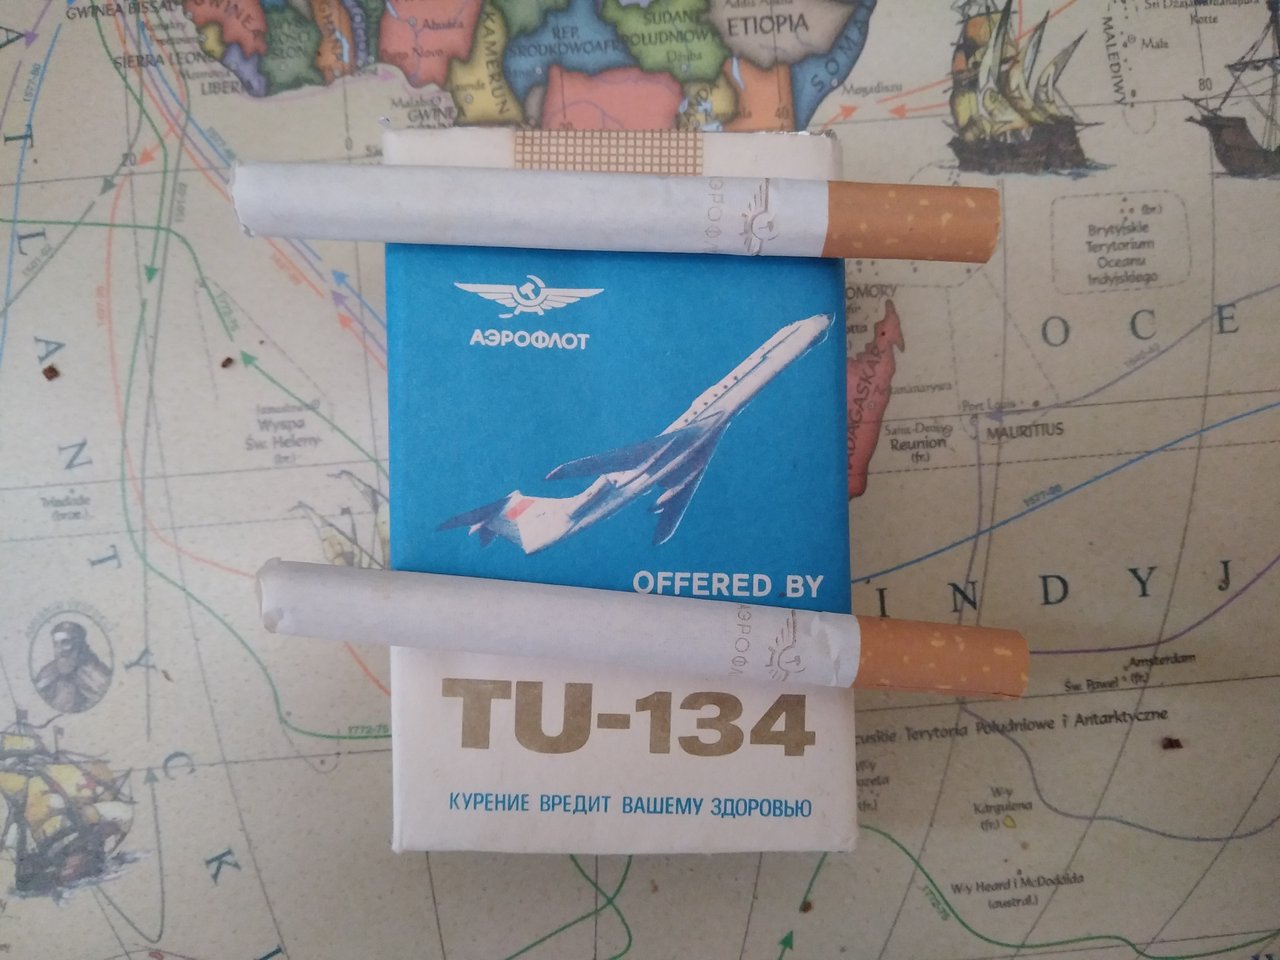 papierosy tu-134 2.jpg